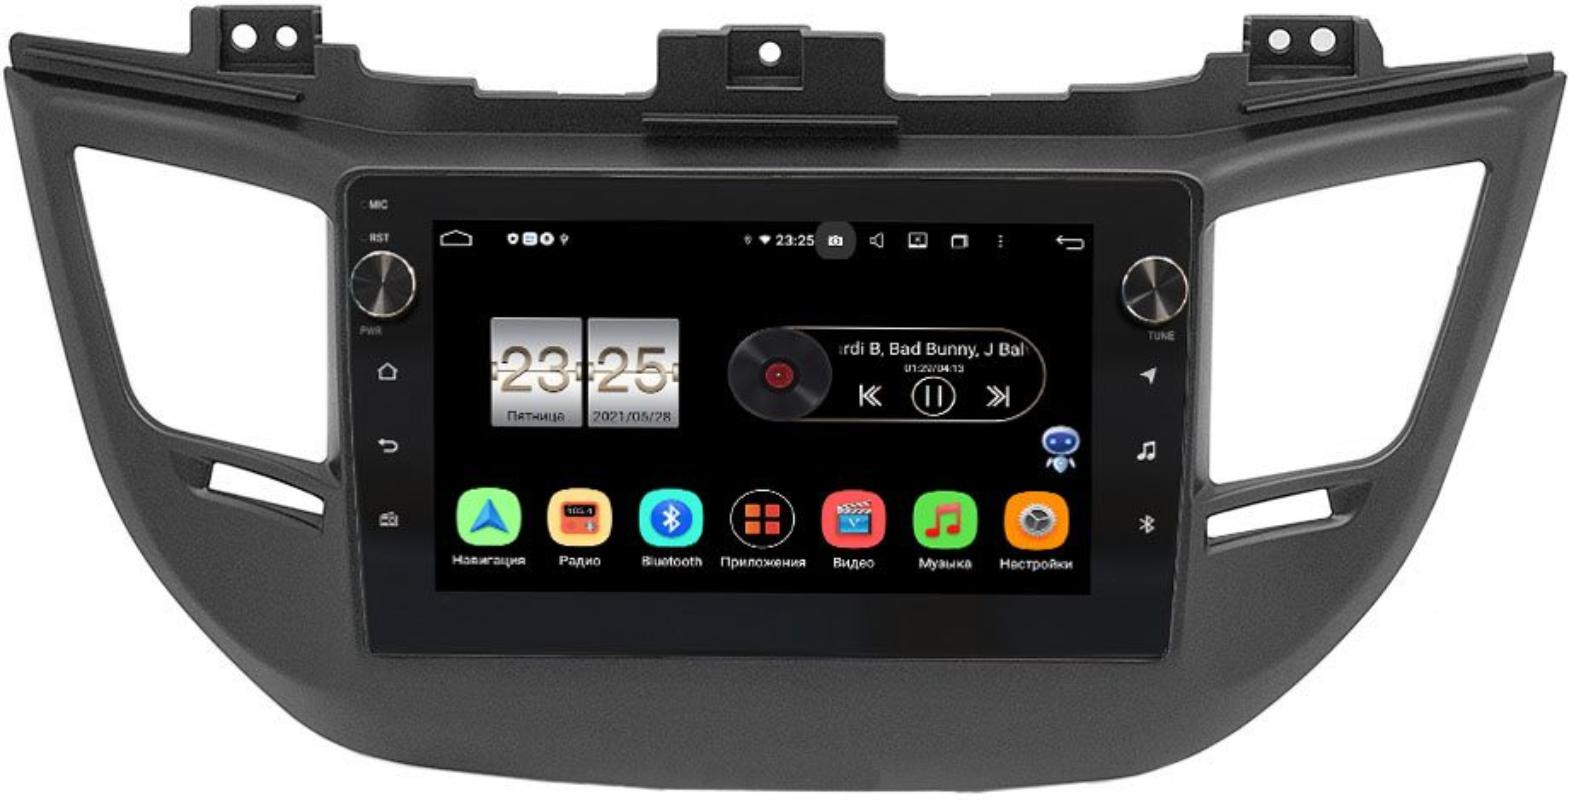 Штатная магнитола LeTrun BPX409-064-1 для Hyundai Tucson III 2015-2018 на Android 10 (4/32, DSP, IPS, с голосовым ассистентом, с крутилками) для авто с камерой (+ Камера заднего вида в подарок!)